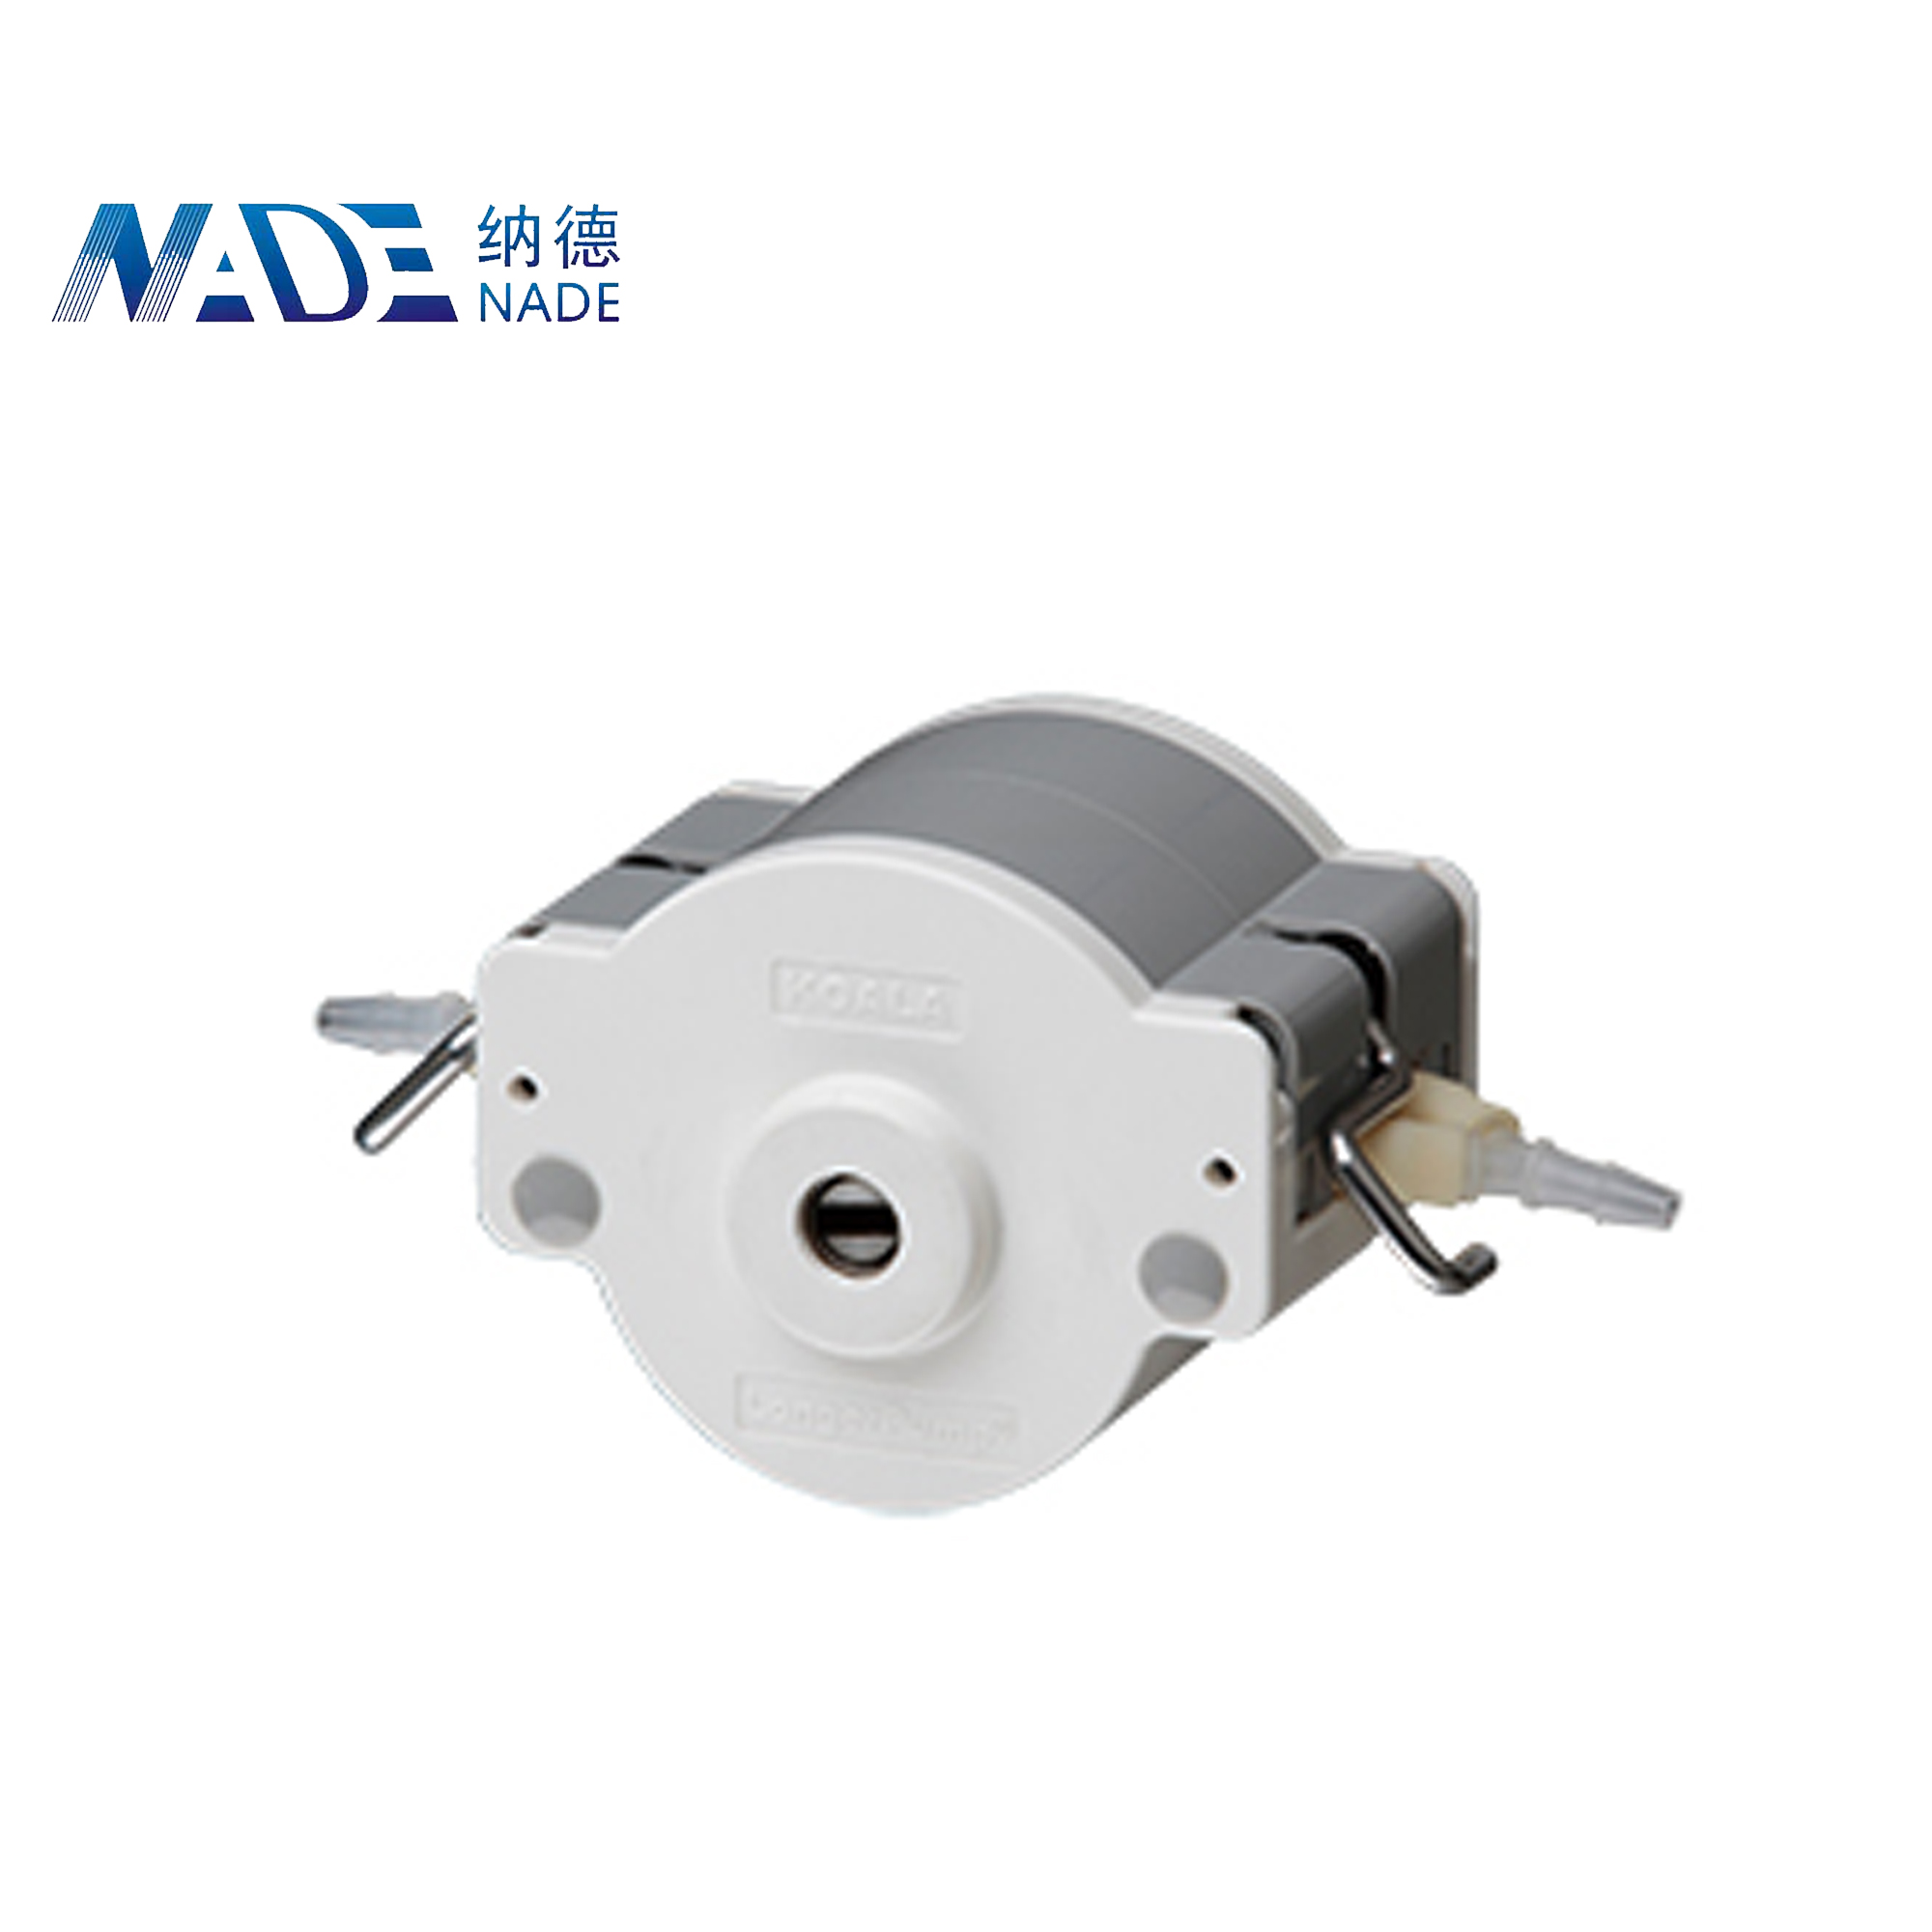 Nade Lab Equipment Peristaltic pump Head DMD15-13 0-2070ml/min